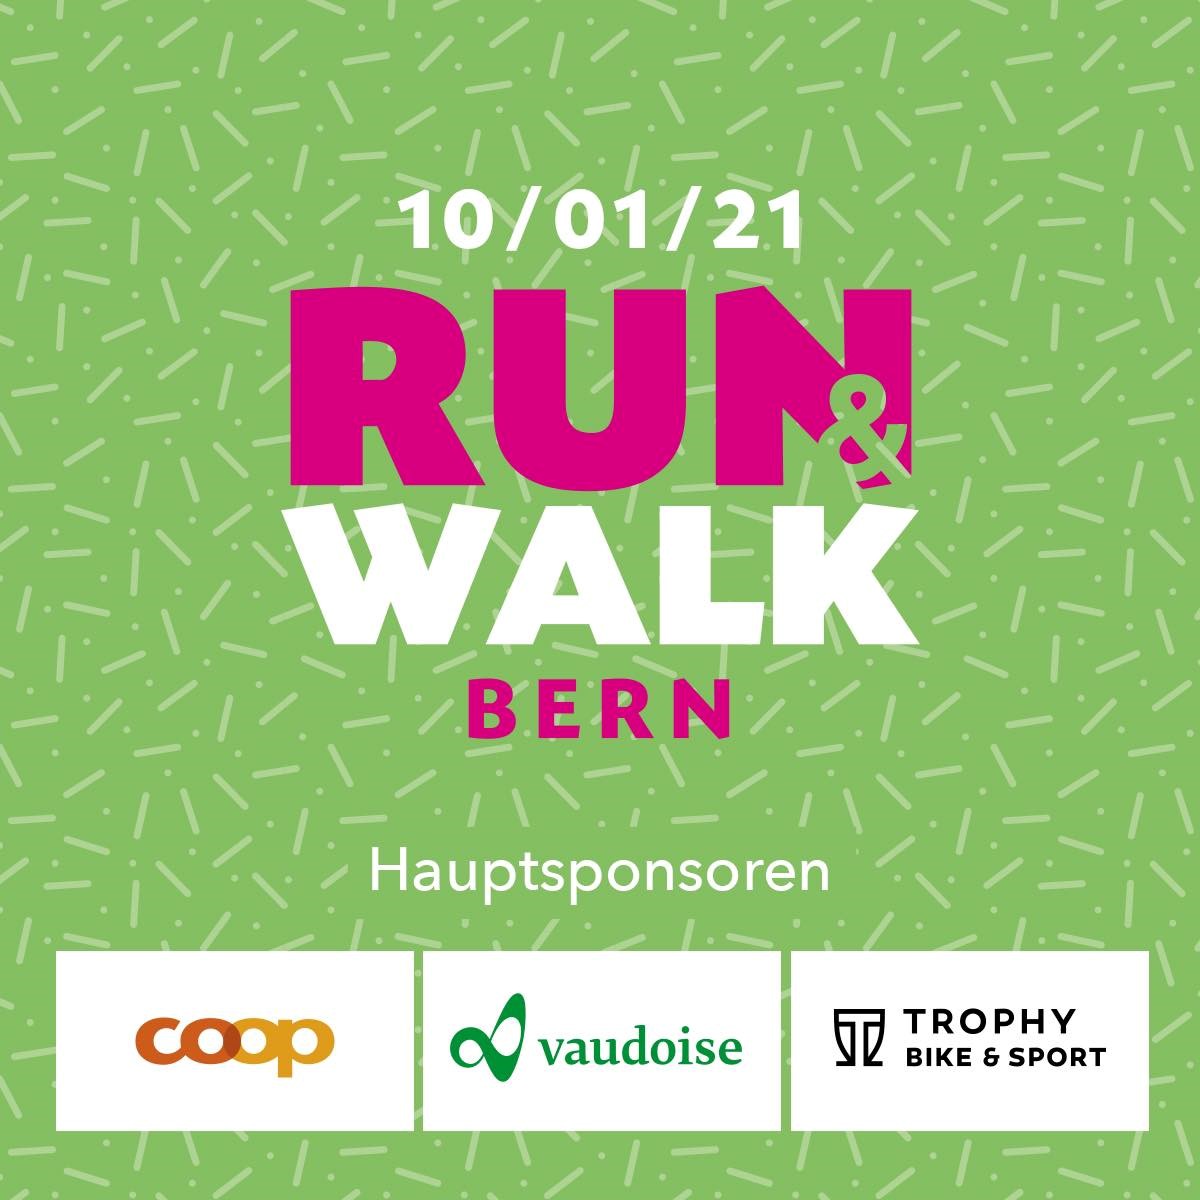 3. Run and Walk Bern